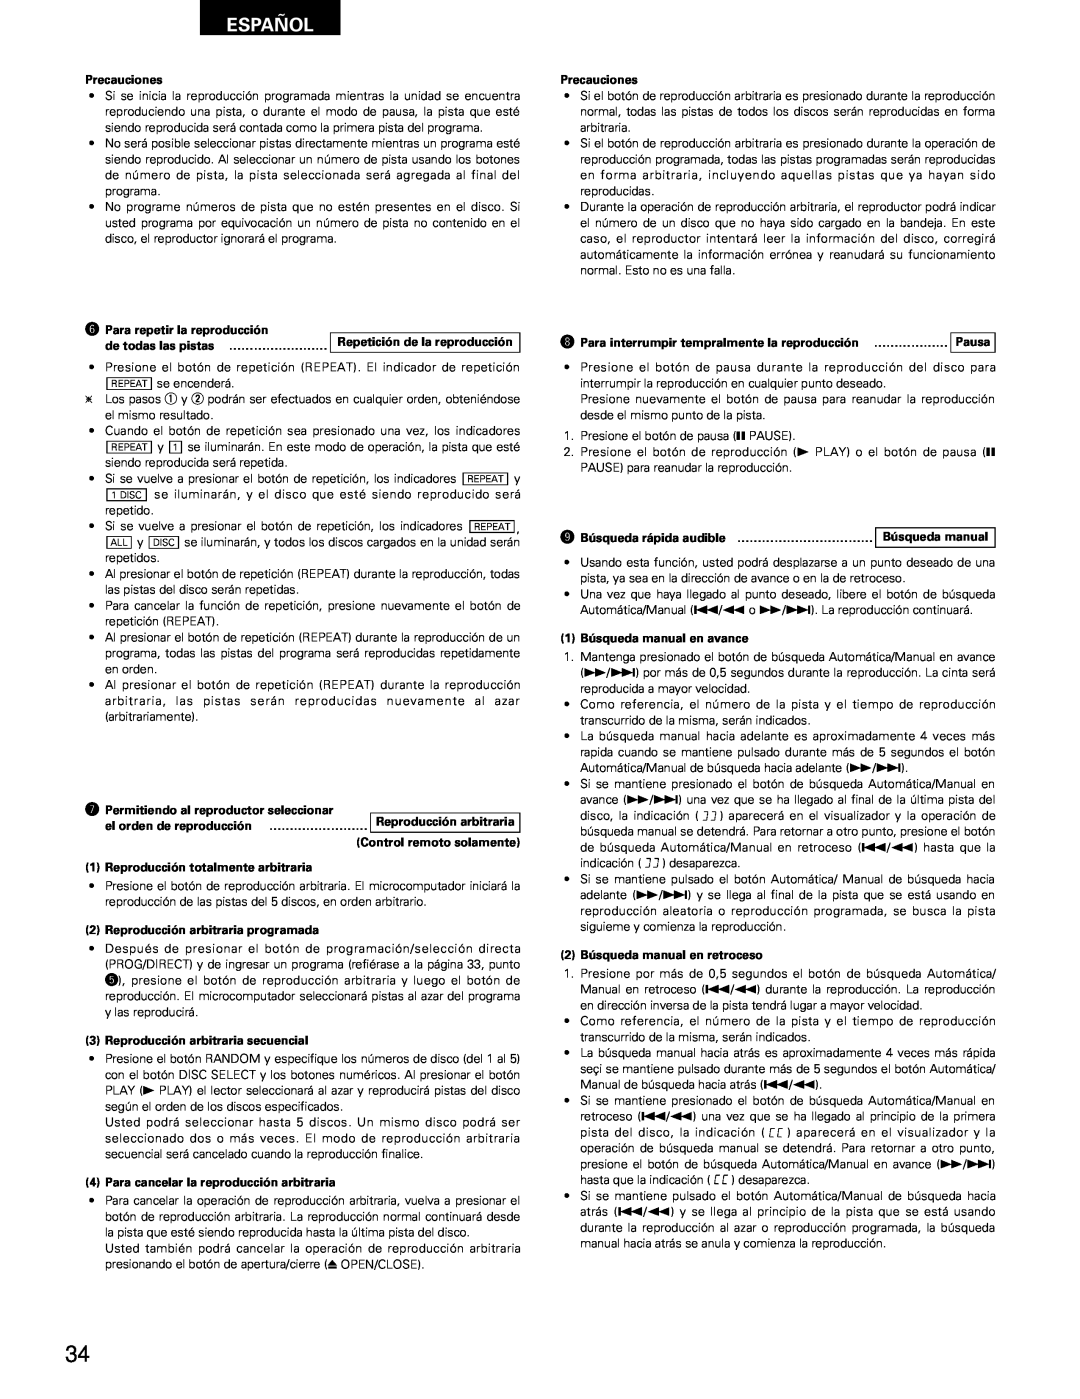 Denon DCM-65/35 manual Español, Precauciones 